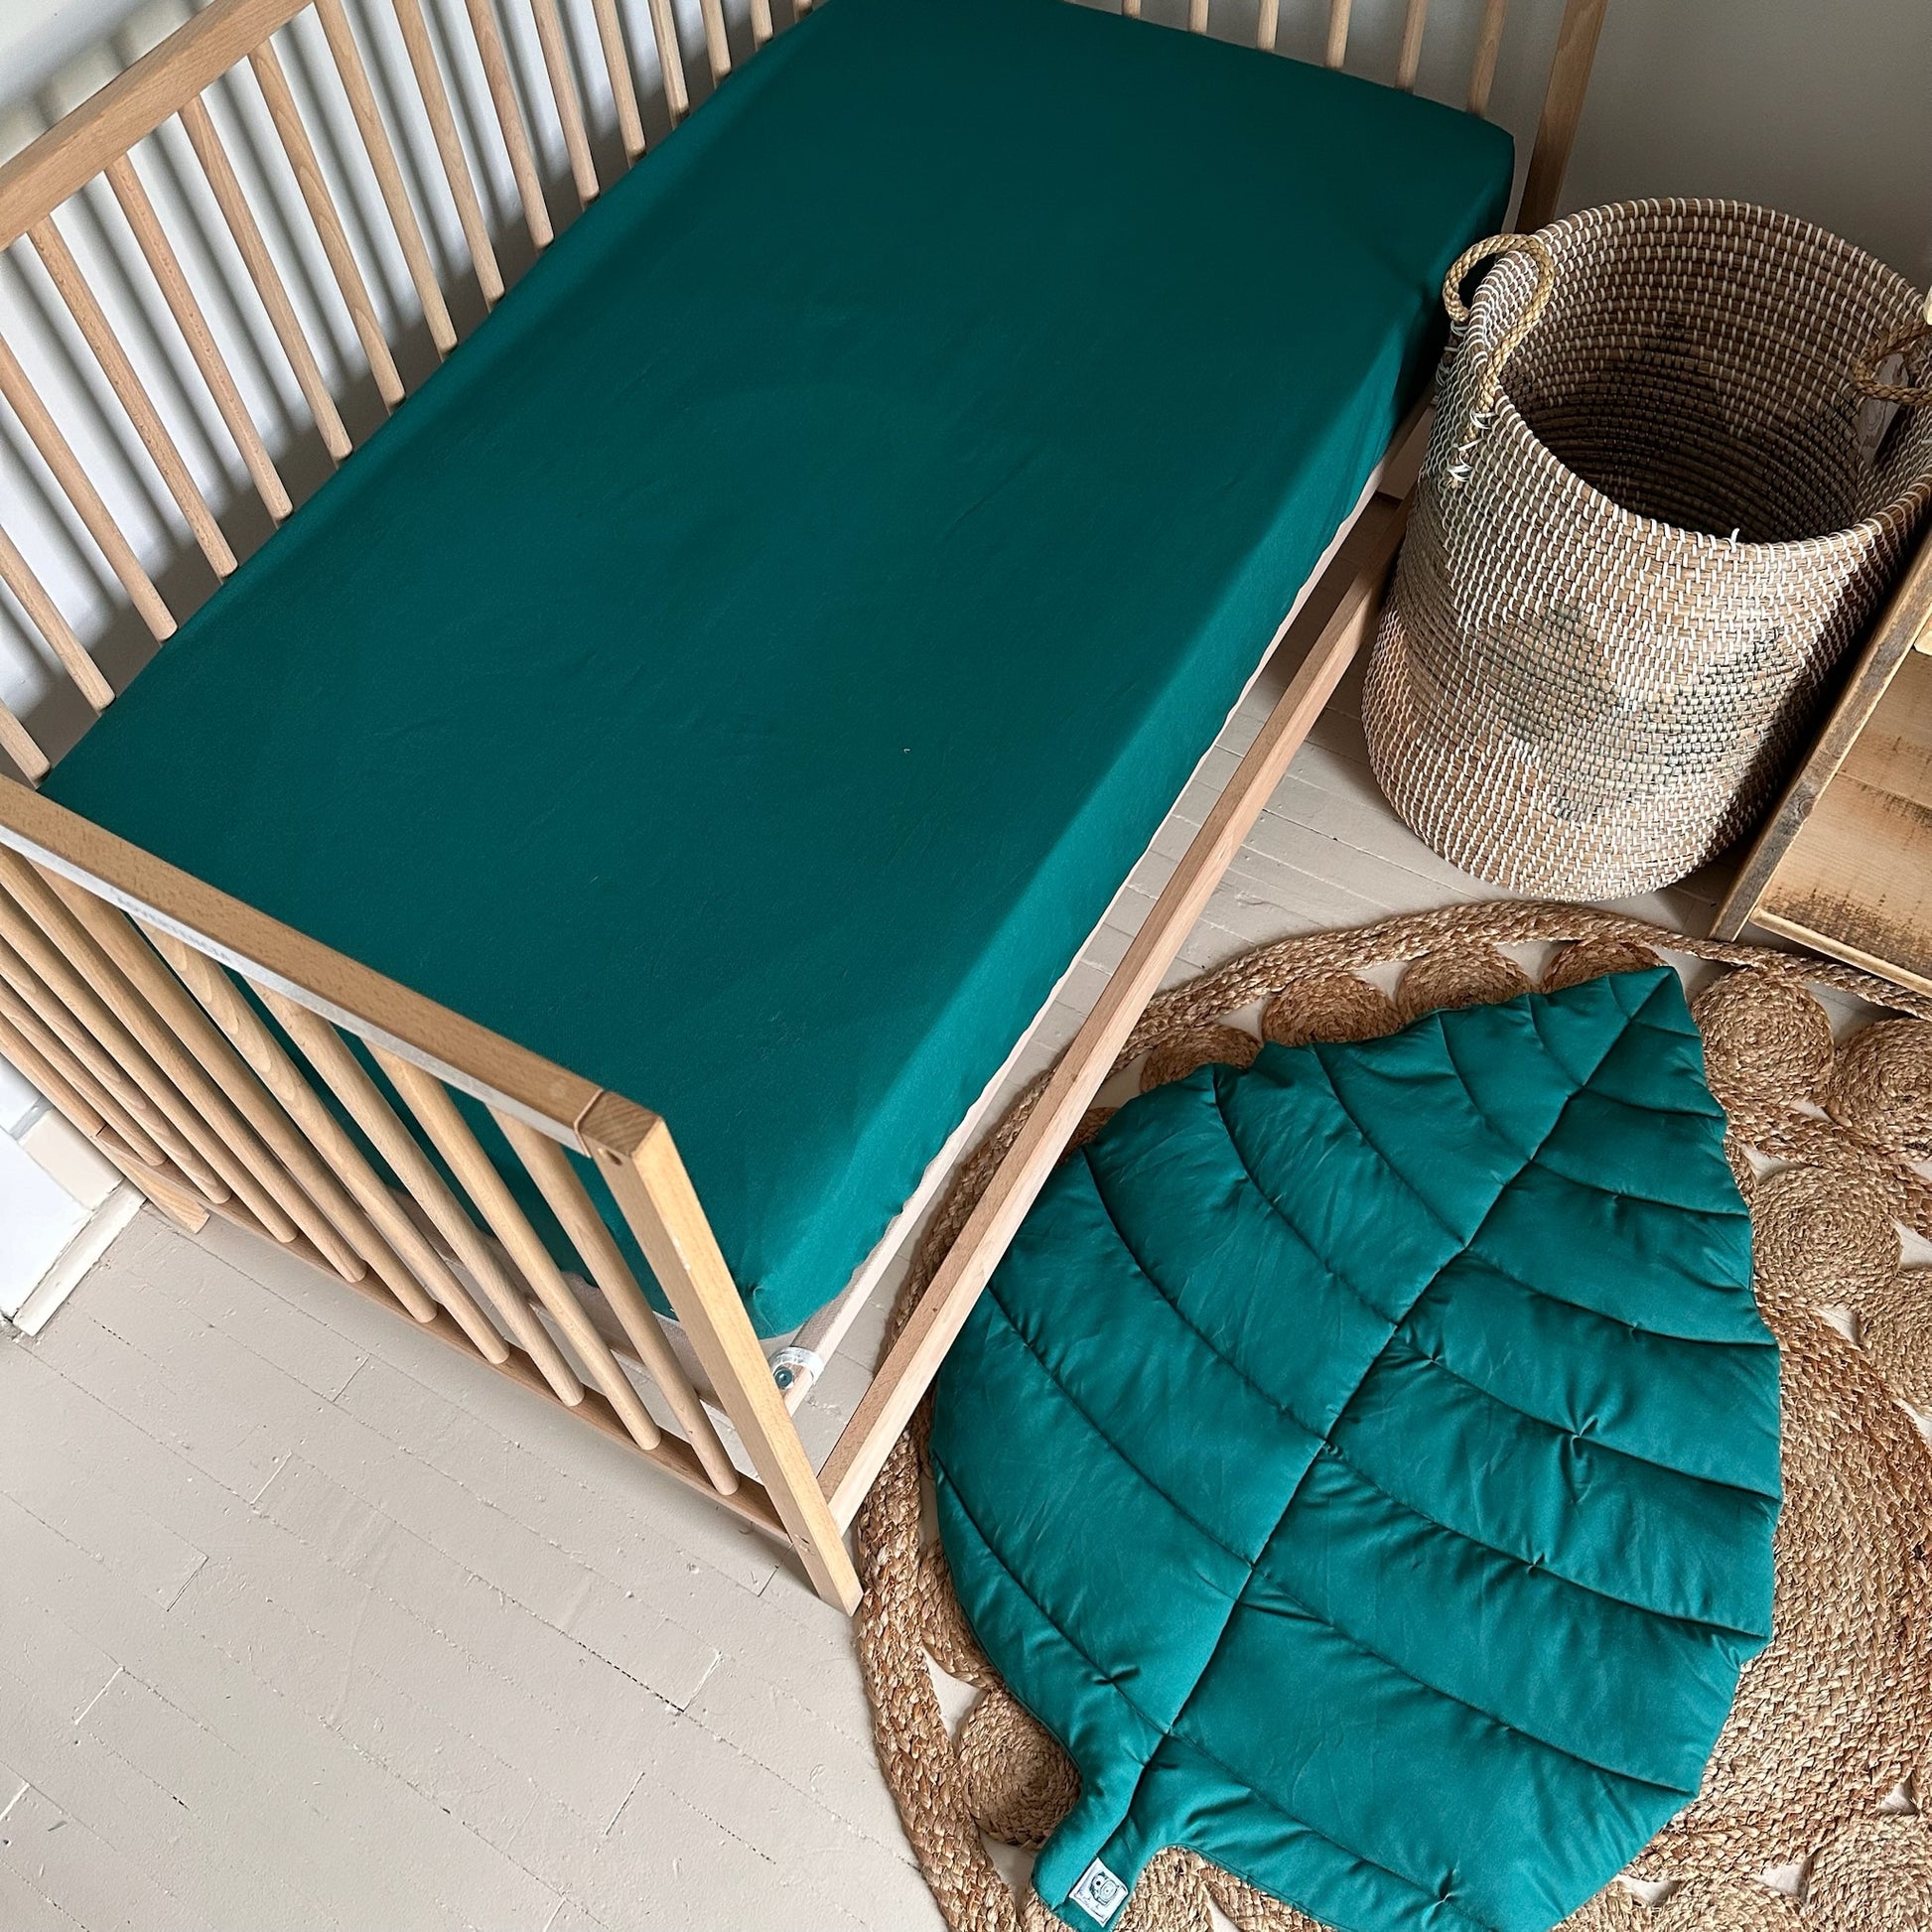 Qiilu Drap de bébé en coton Drap de lit bébé en coton doux respirant  confortable drap de lit bébé pour garçons luminaire plat Brun